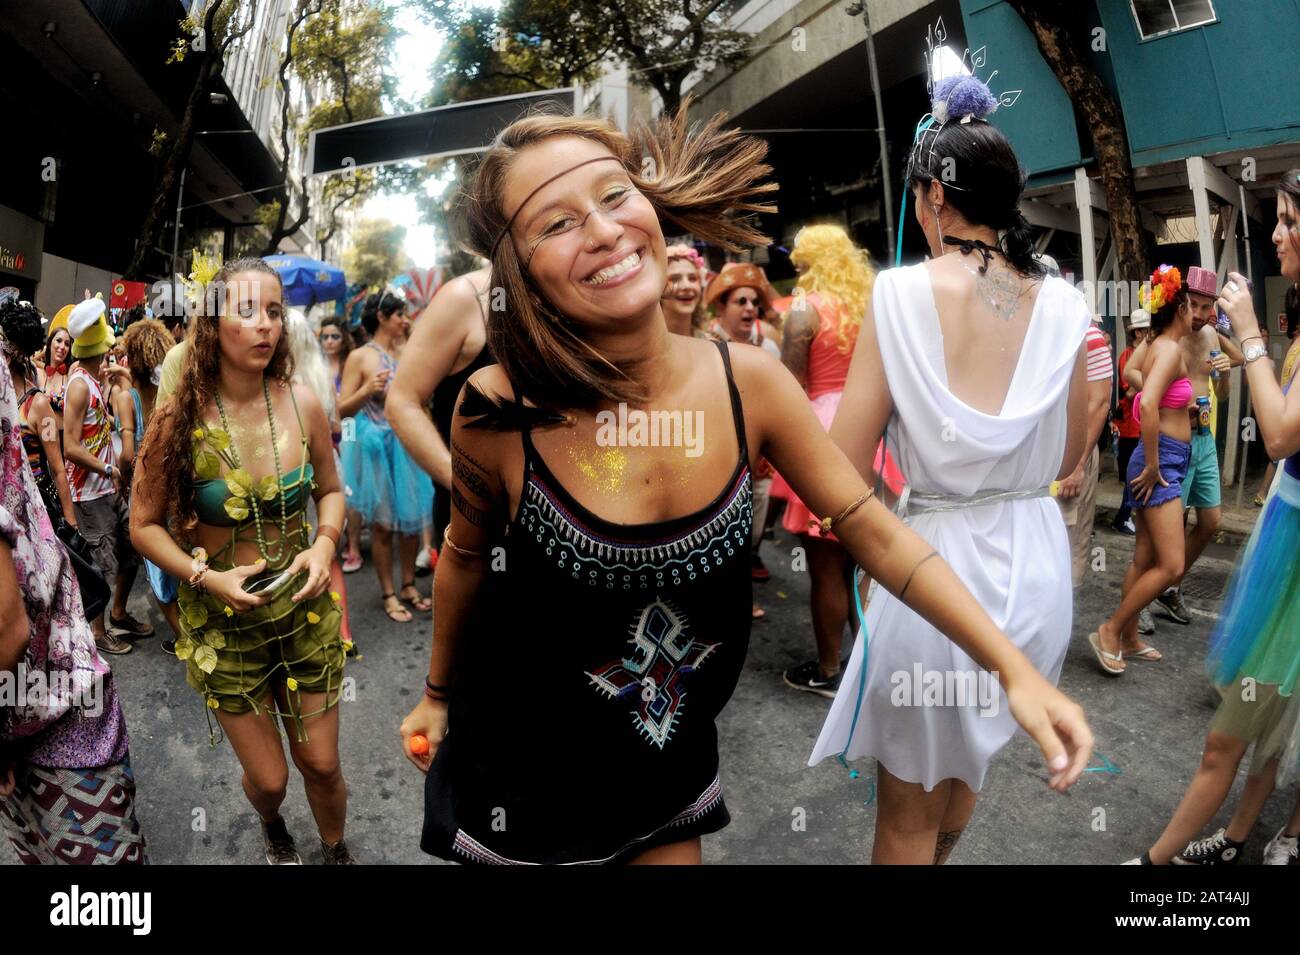 Street Carnival, America, Brasile - 7 febbraio 2016: Felici festaioli in costume entrano nello spirito del Carnevale durante una sfilata tenutasi a Rio de Janeiro. Foto Stock